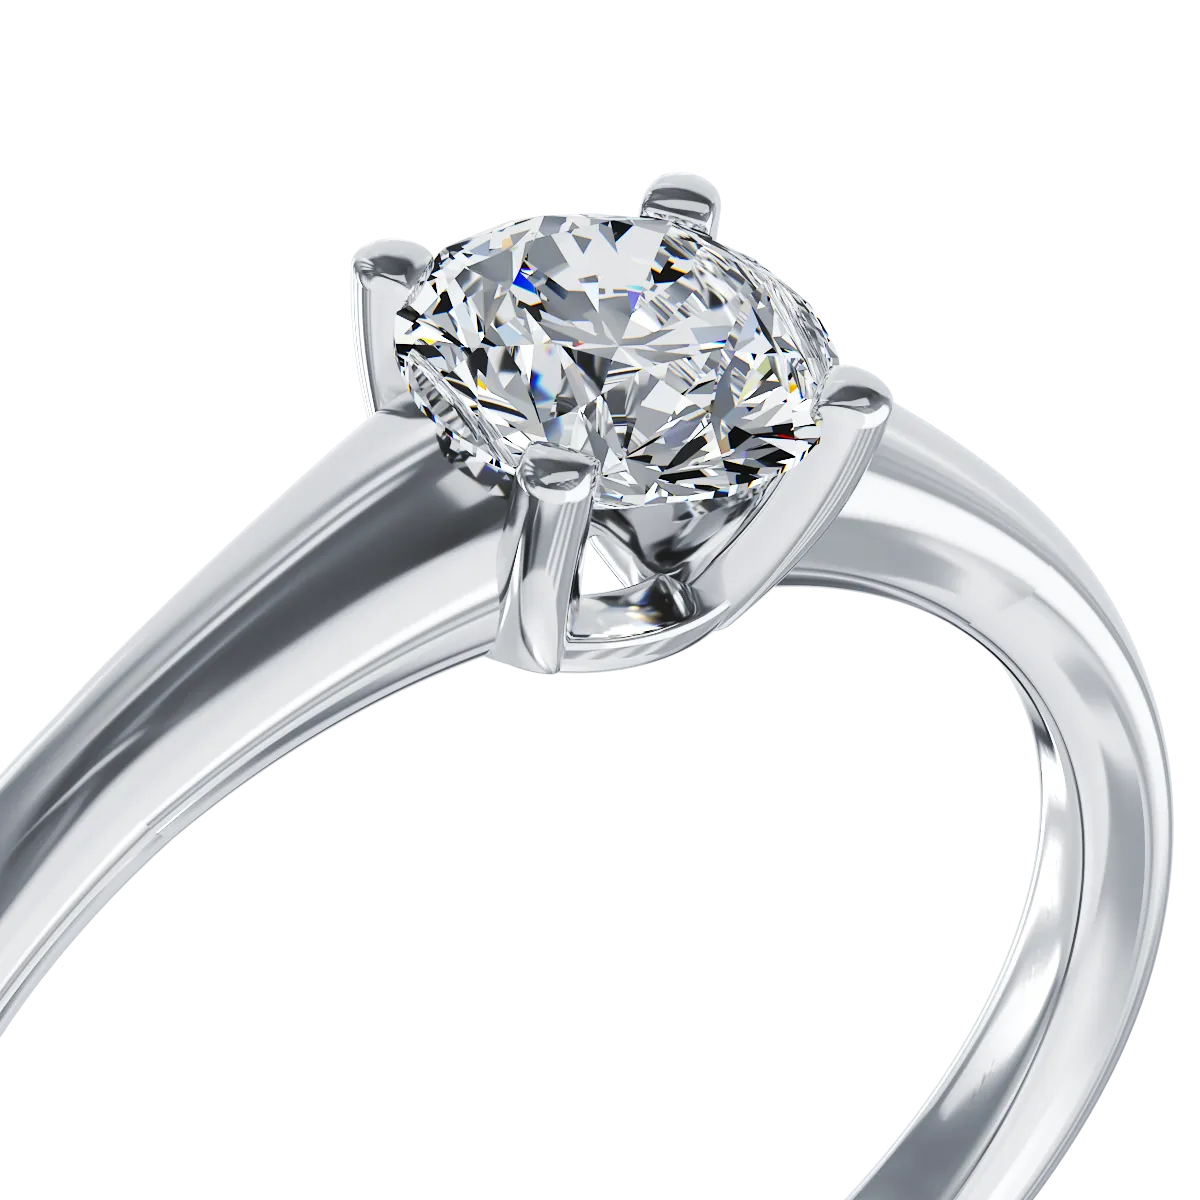 18K fehérarany eljegyzési gyűrű 0.5 karátos gyémánttal